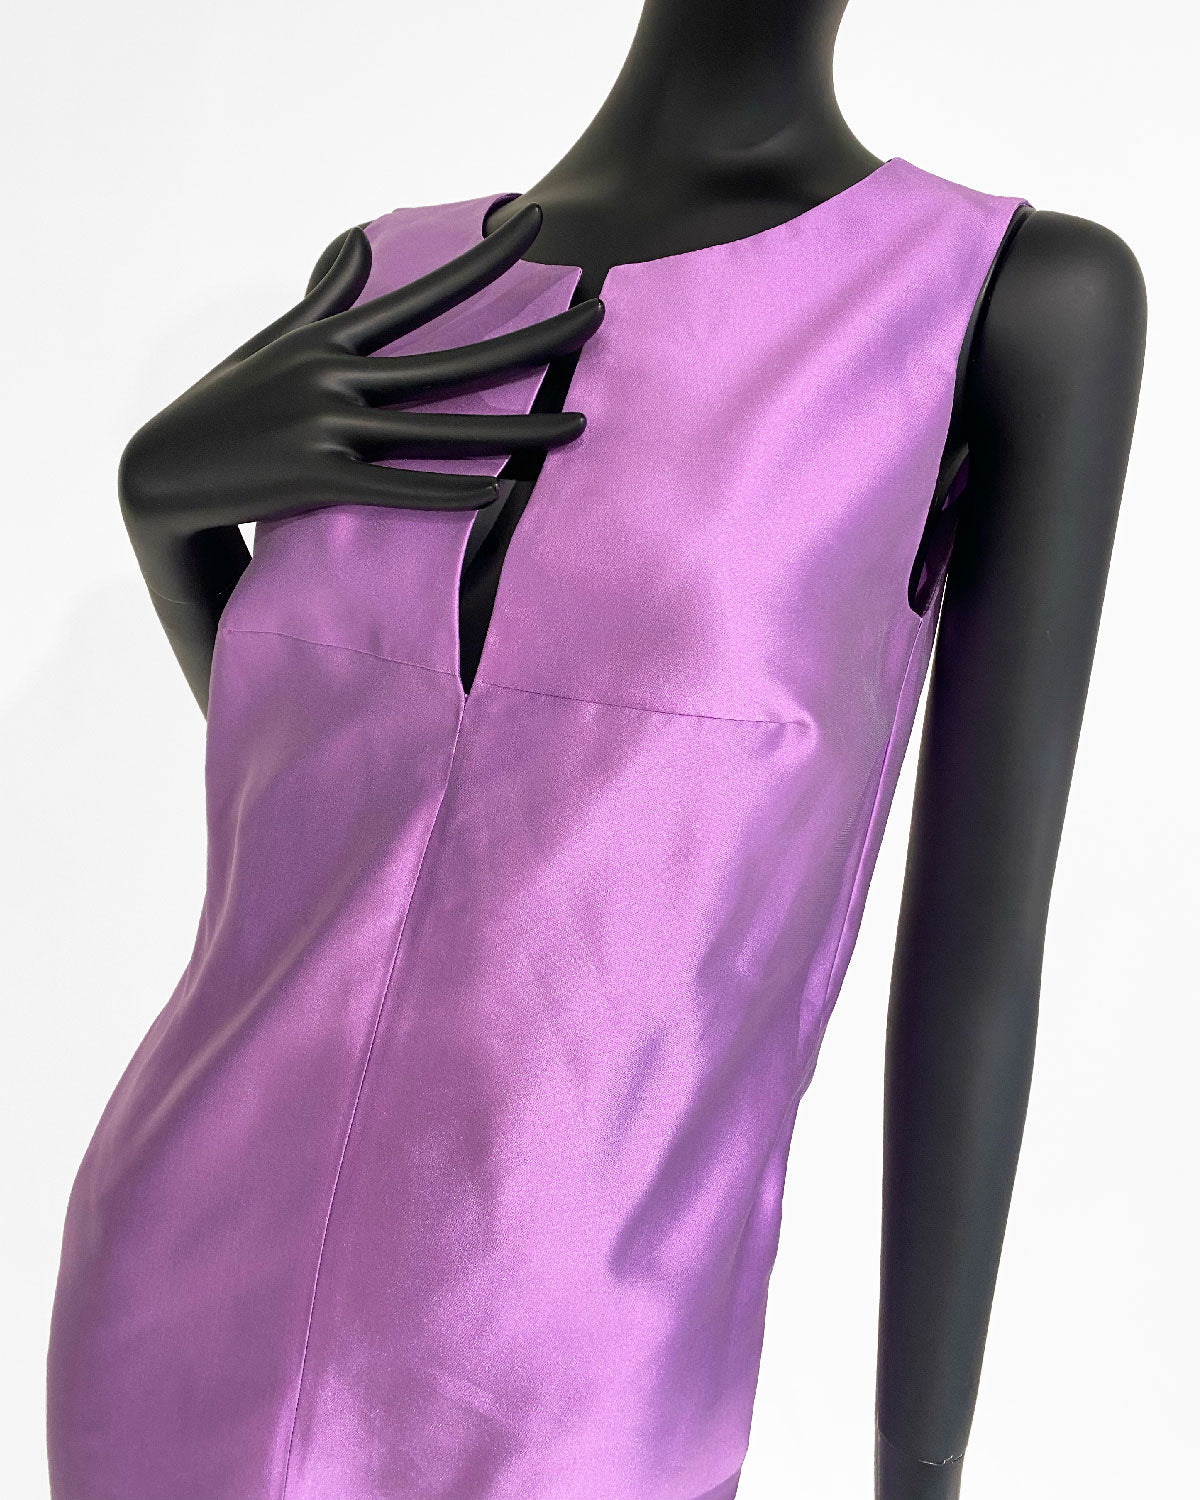 T-Top Dress in Silk Taffeta